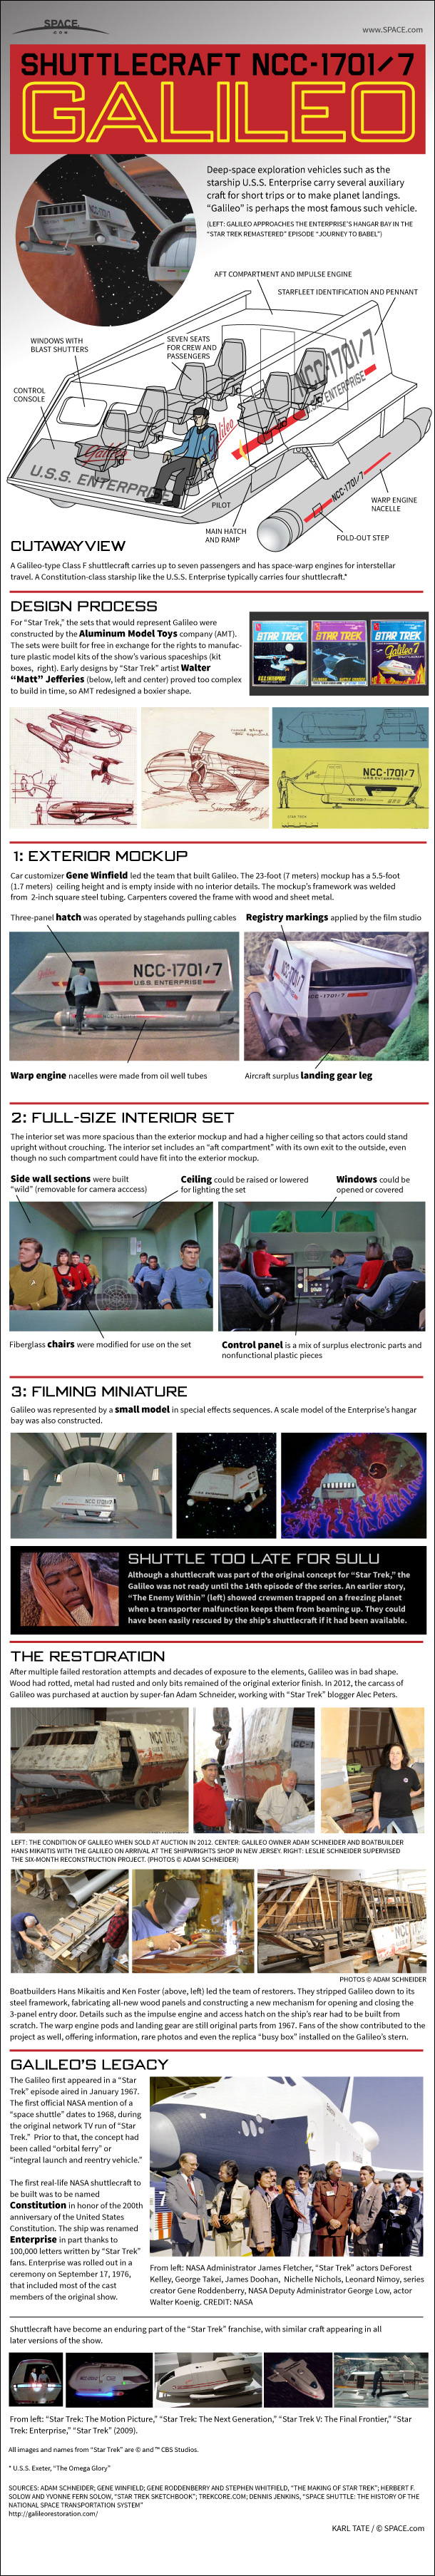 Inside Star Trek S Galileo Shuttlecraft Infographic Space